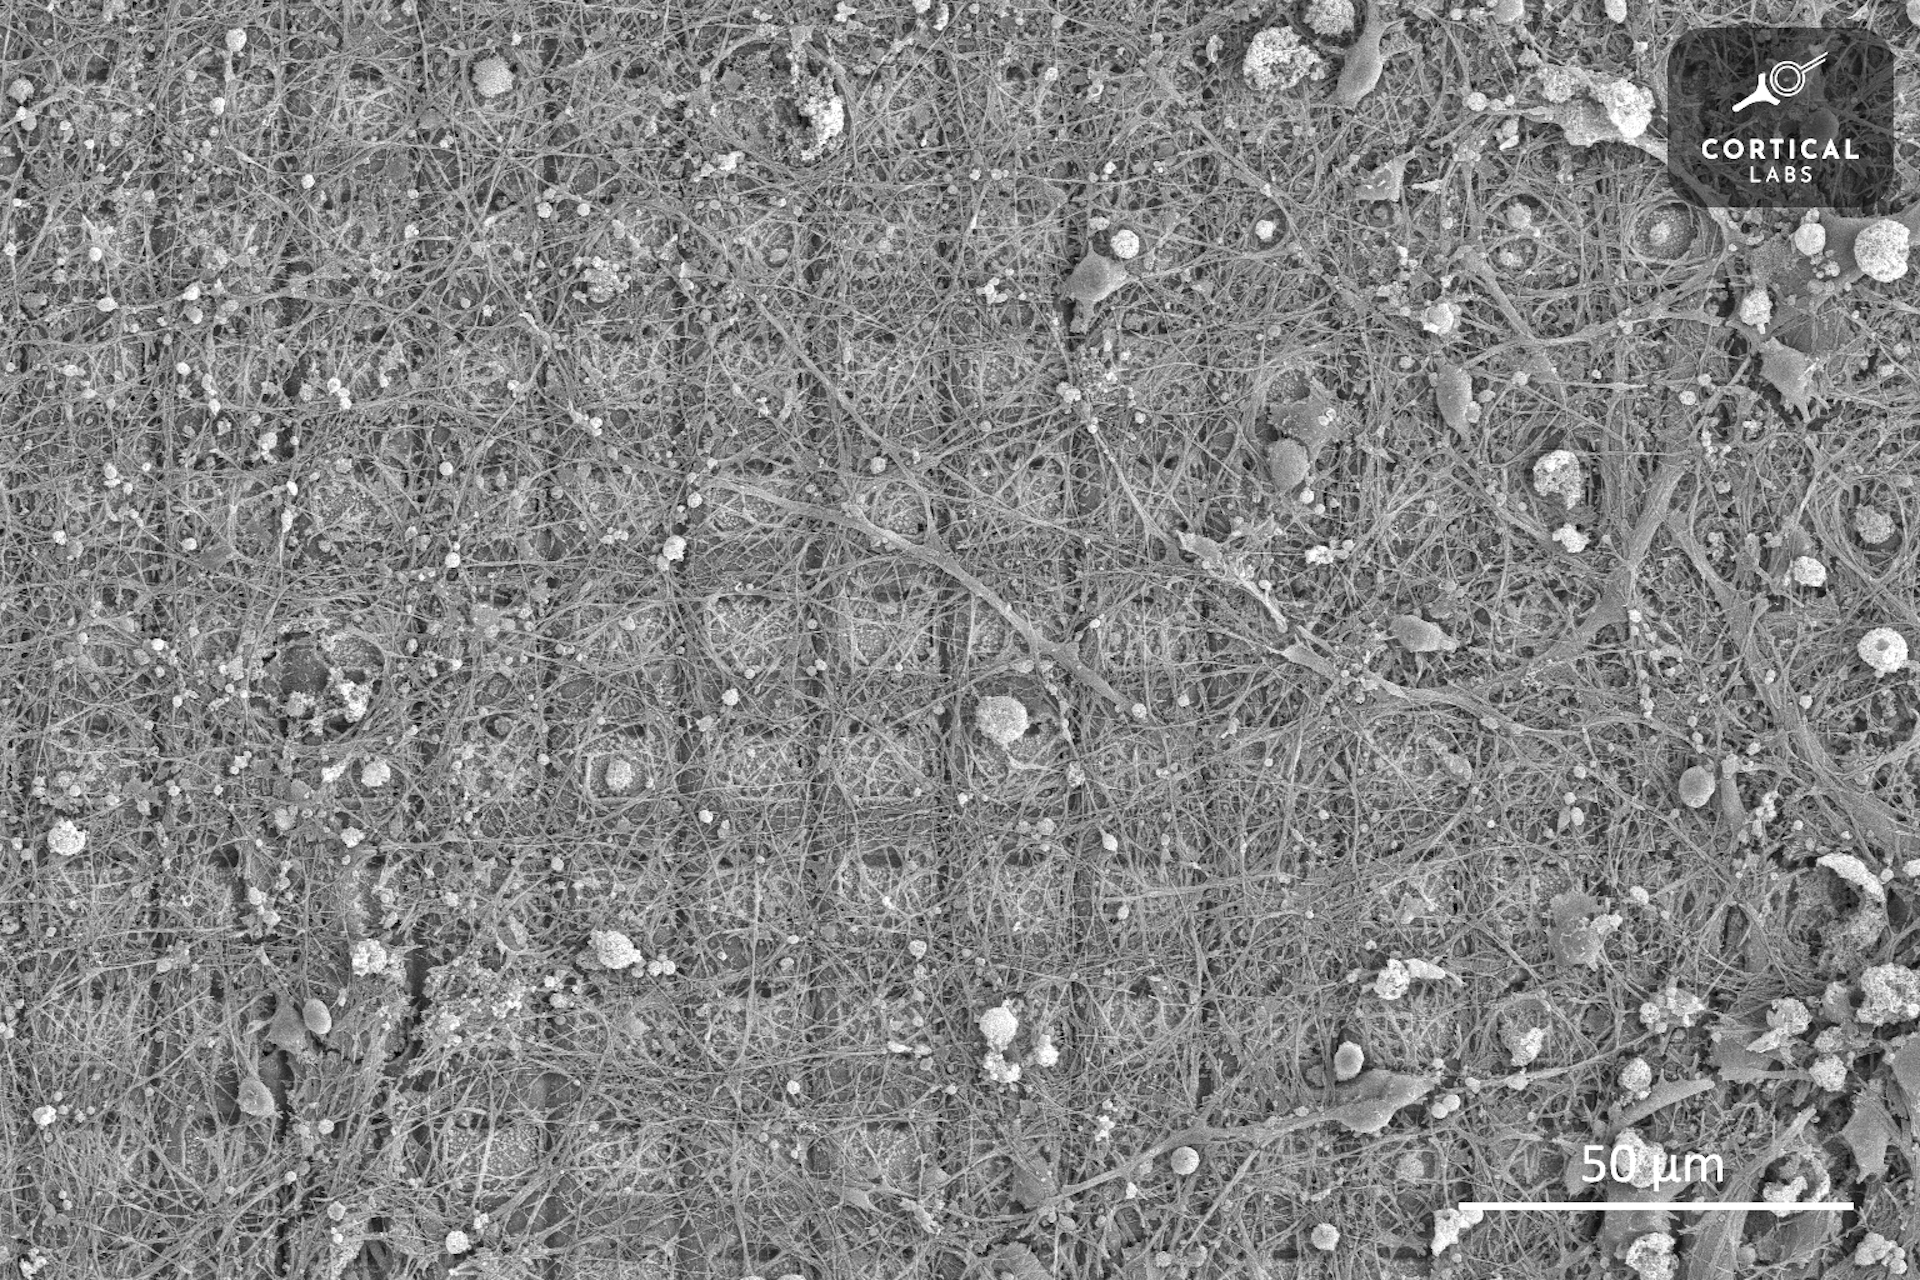 Γουρούνια με ανθρώπινα εγκεφαλικά κύτταρα και βιολογικά τσιπ: Πώς οι υβριδικές μορφές ζωής που καλλιεργούνται στο εργαστήριο εξοργίζουν την επιστημονική δεοντολογία